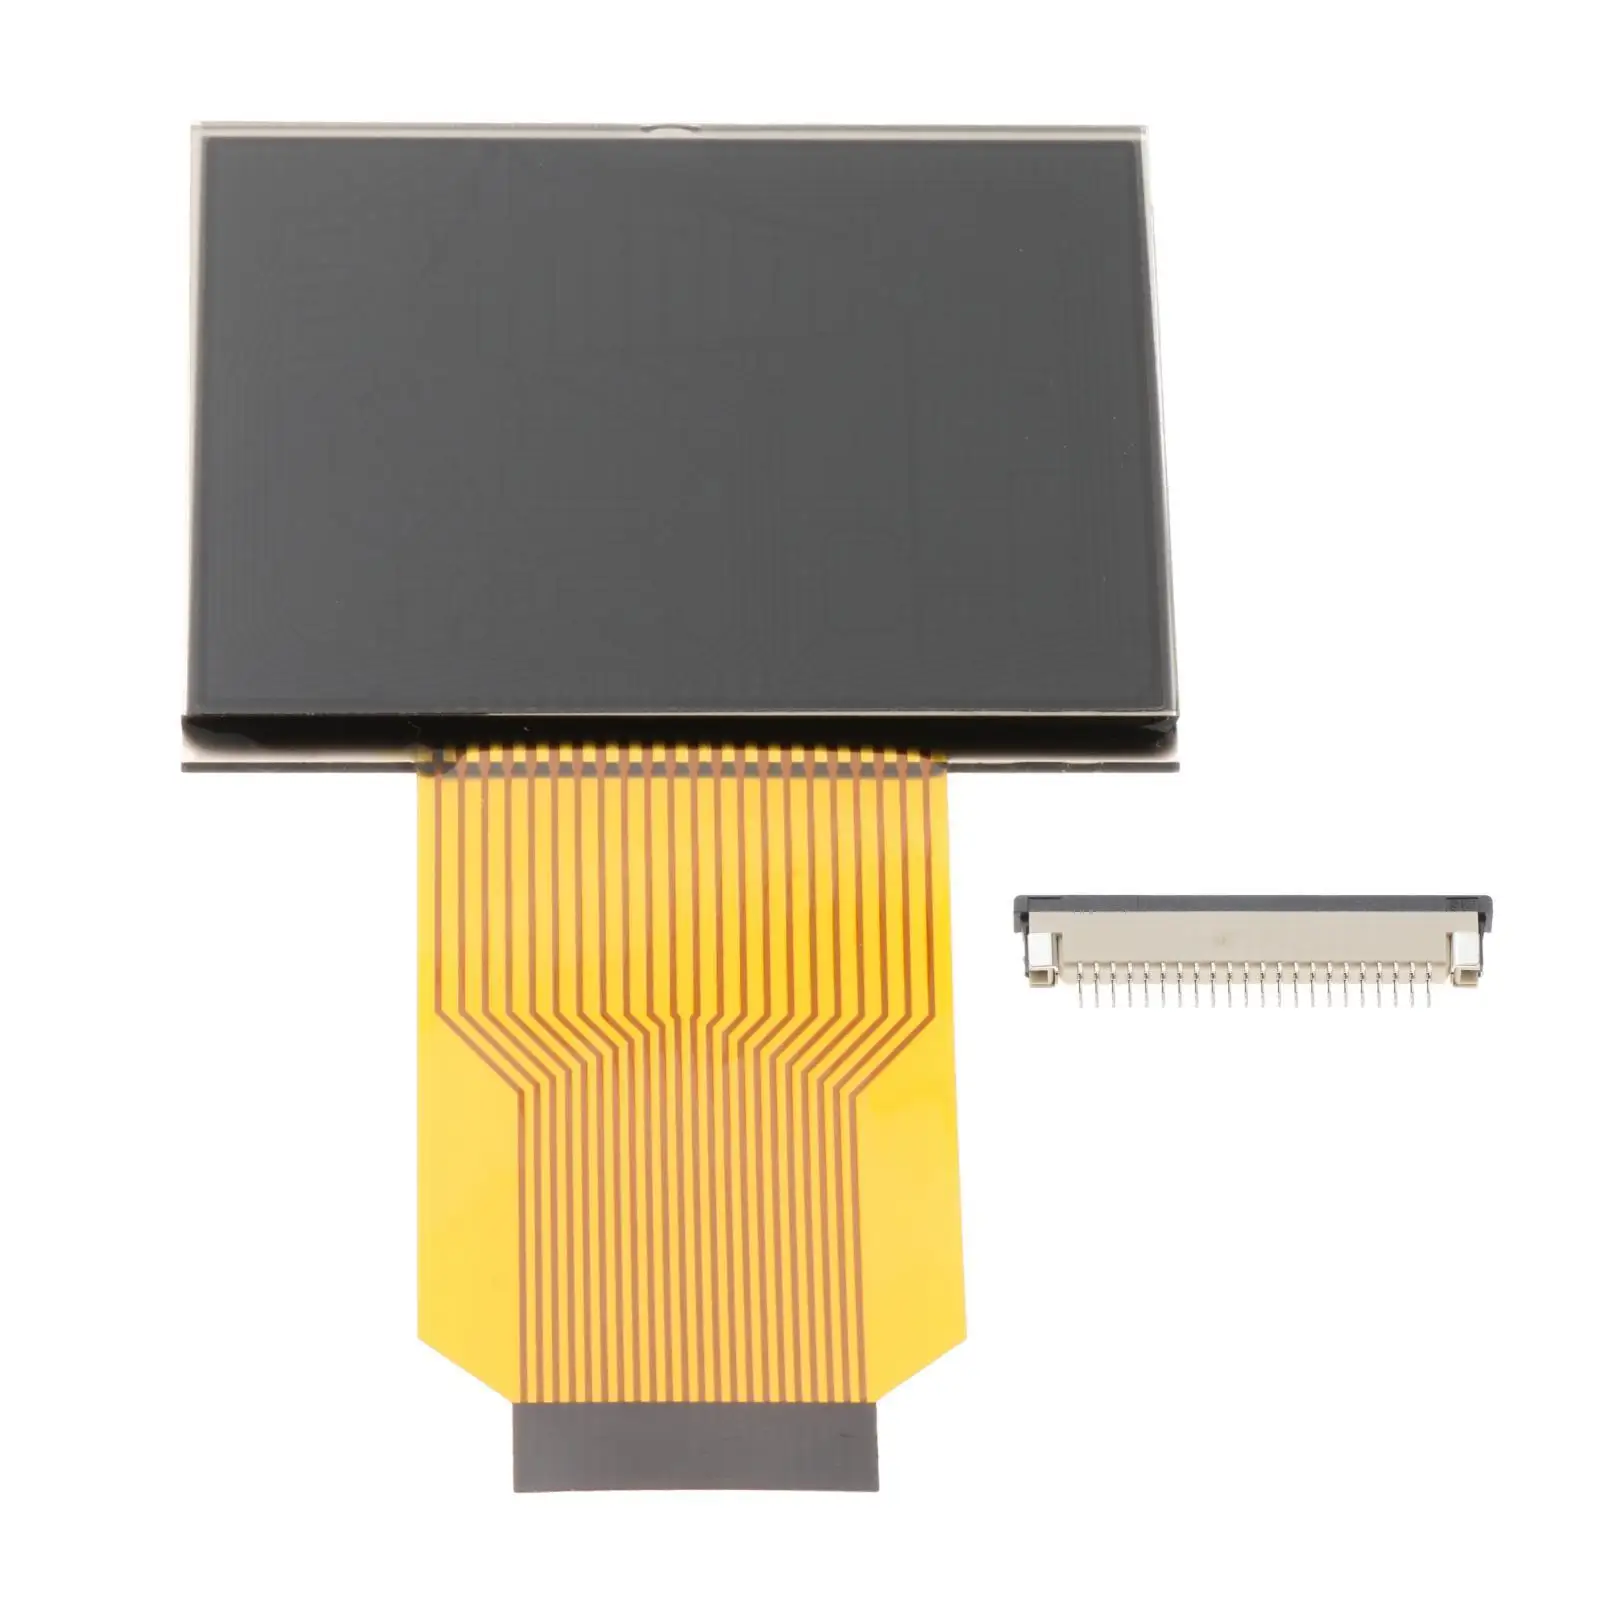 2 Repair LCD Screen LCD Display Instrument Pixel Repair  for  9-5